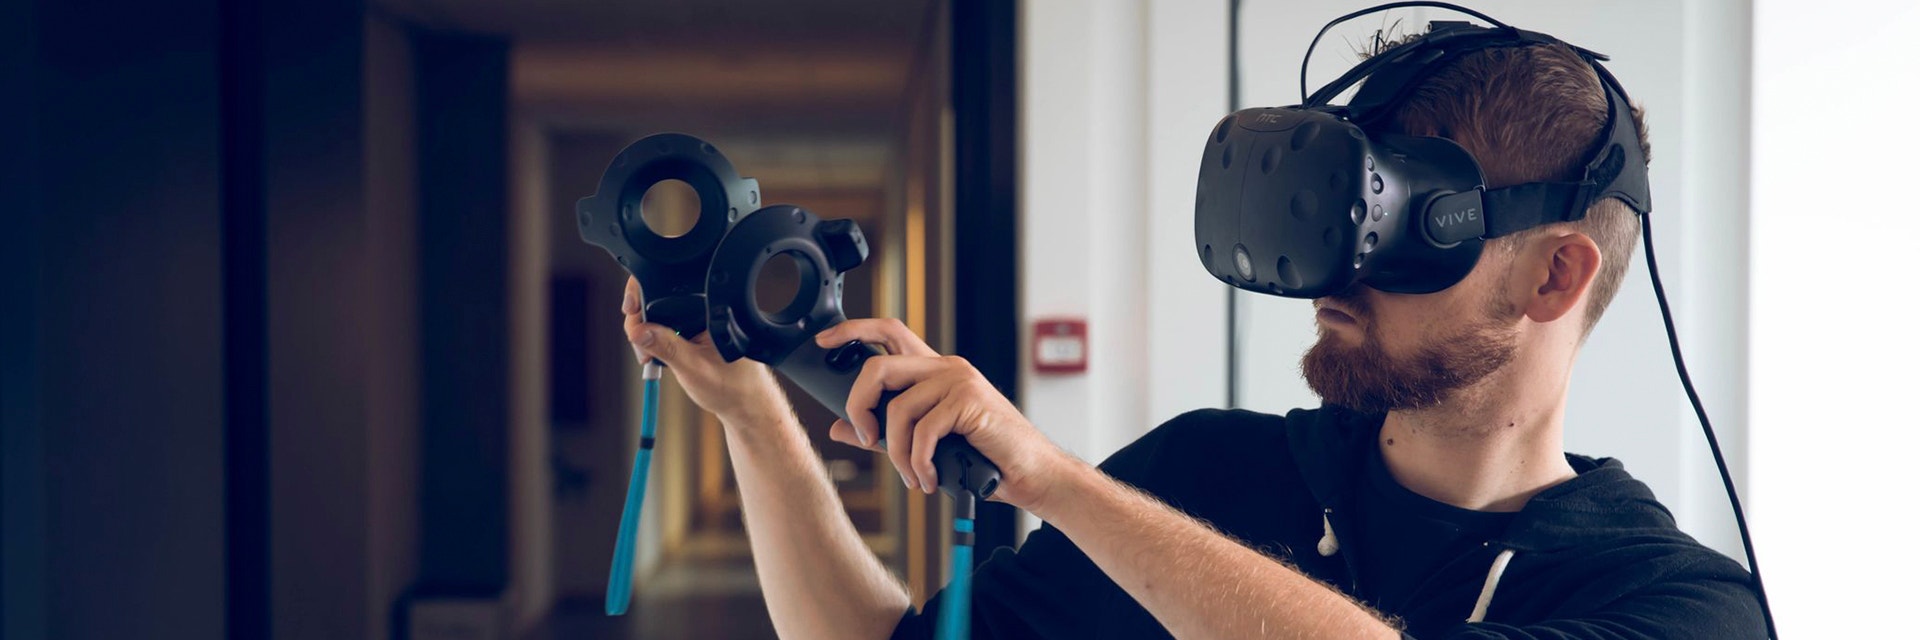 Homme utilisant la technologie de réalité virtuelle